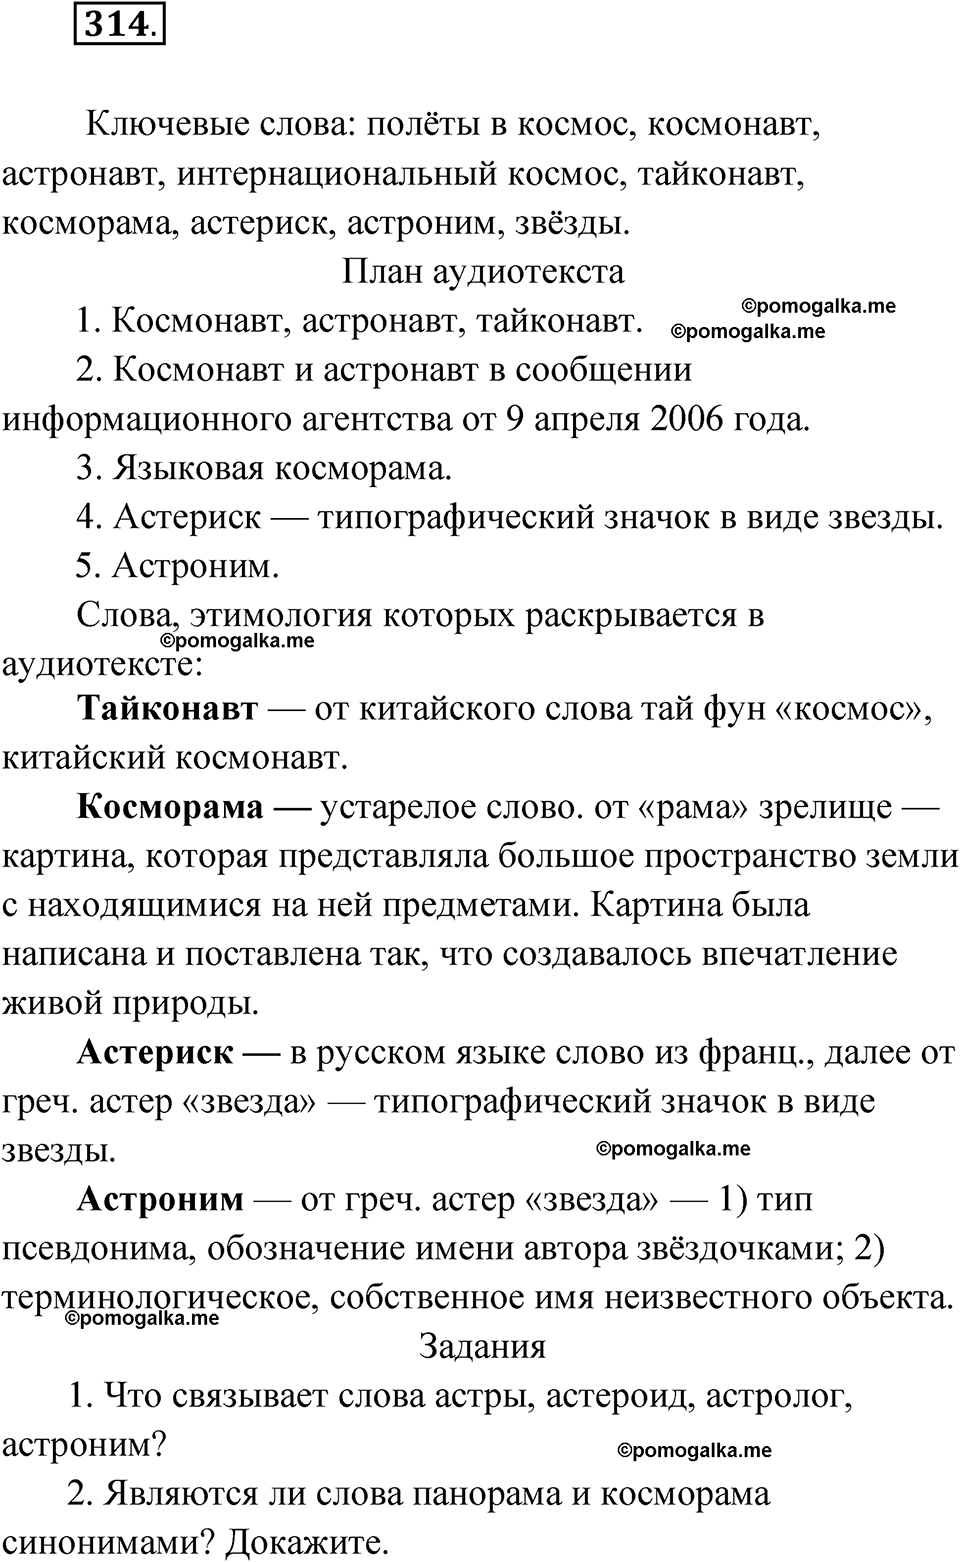 упражнение 314 русский язык 10 класс Львова 2021 год